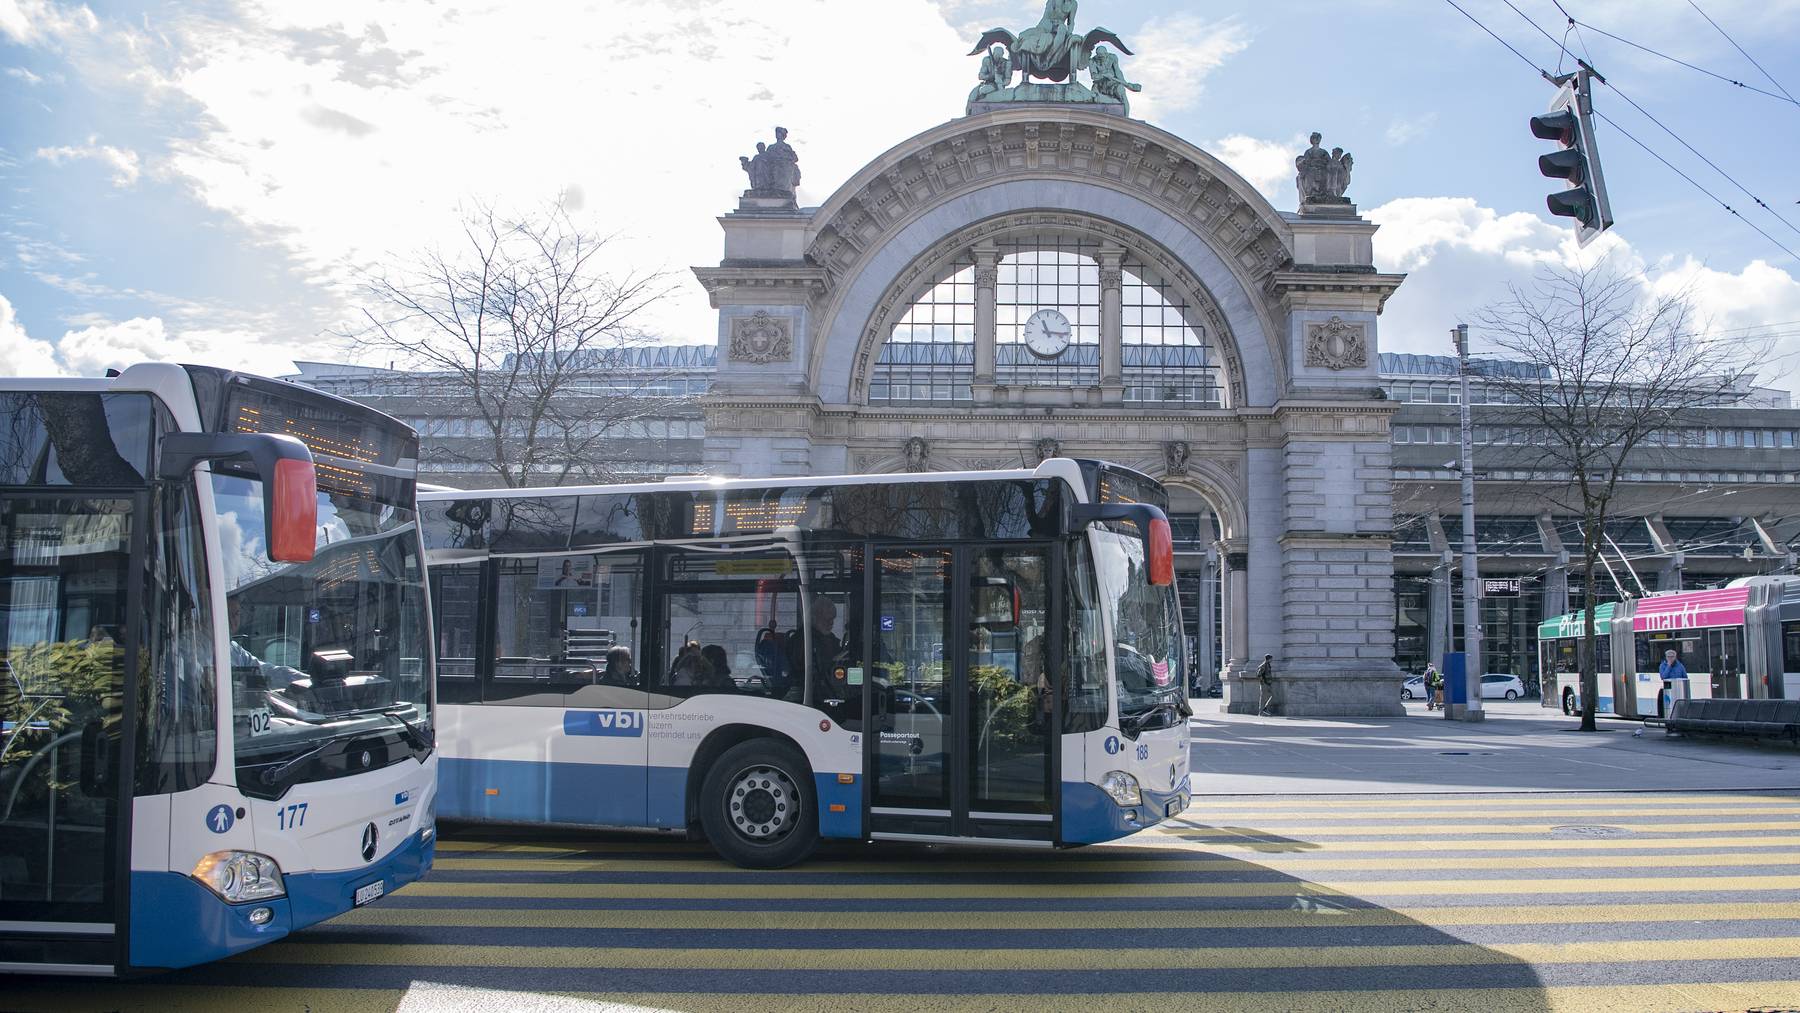 Busse der Verkehrsbetriebe Luzern AG oder VBL auf der Fahrt am Mittwoch, 4. Maerz 2020 beim Bahnhof in Luzern.